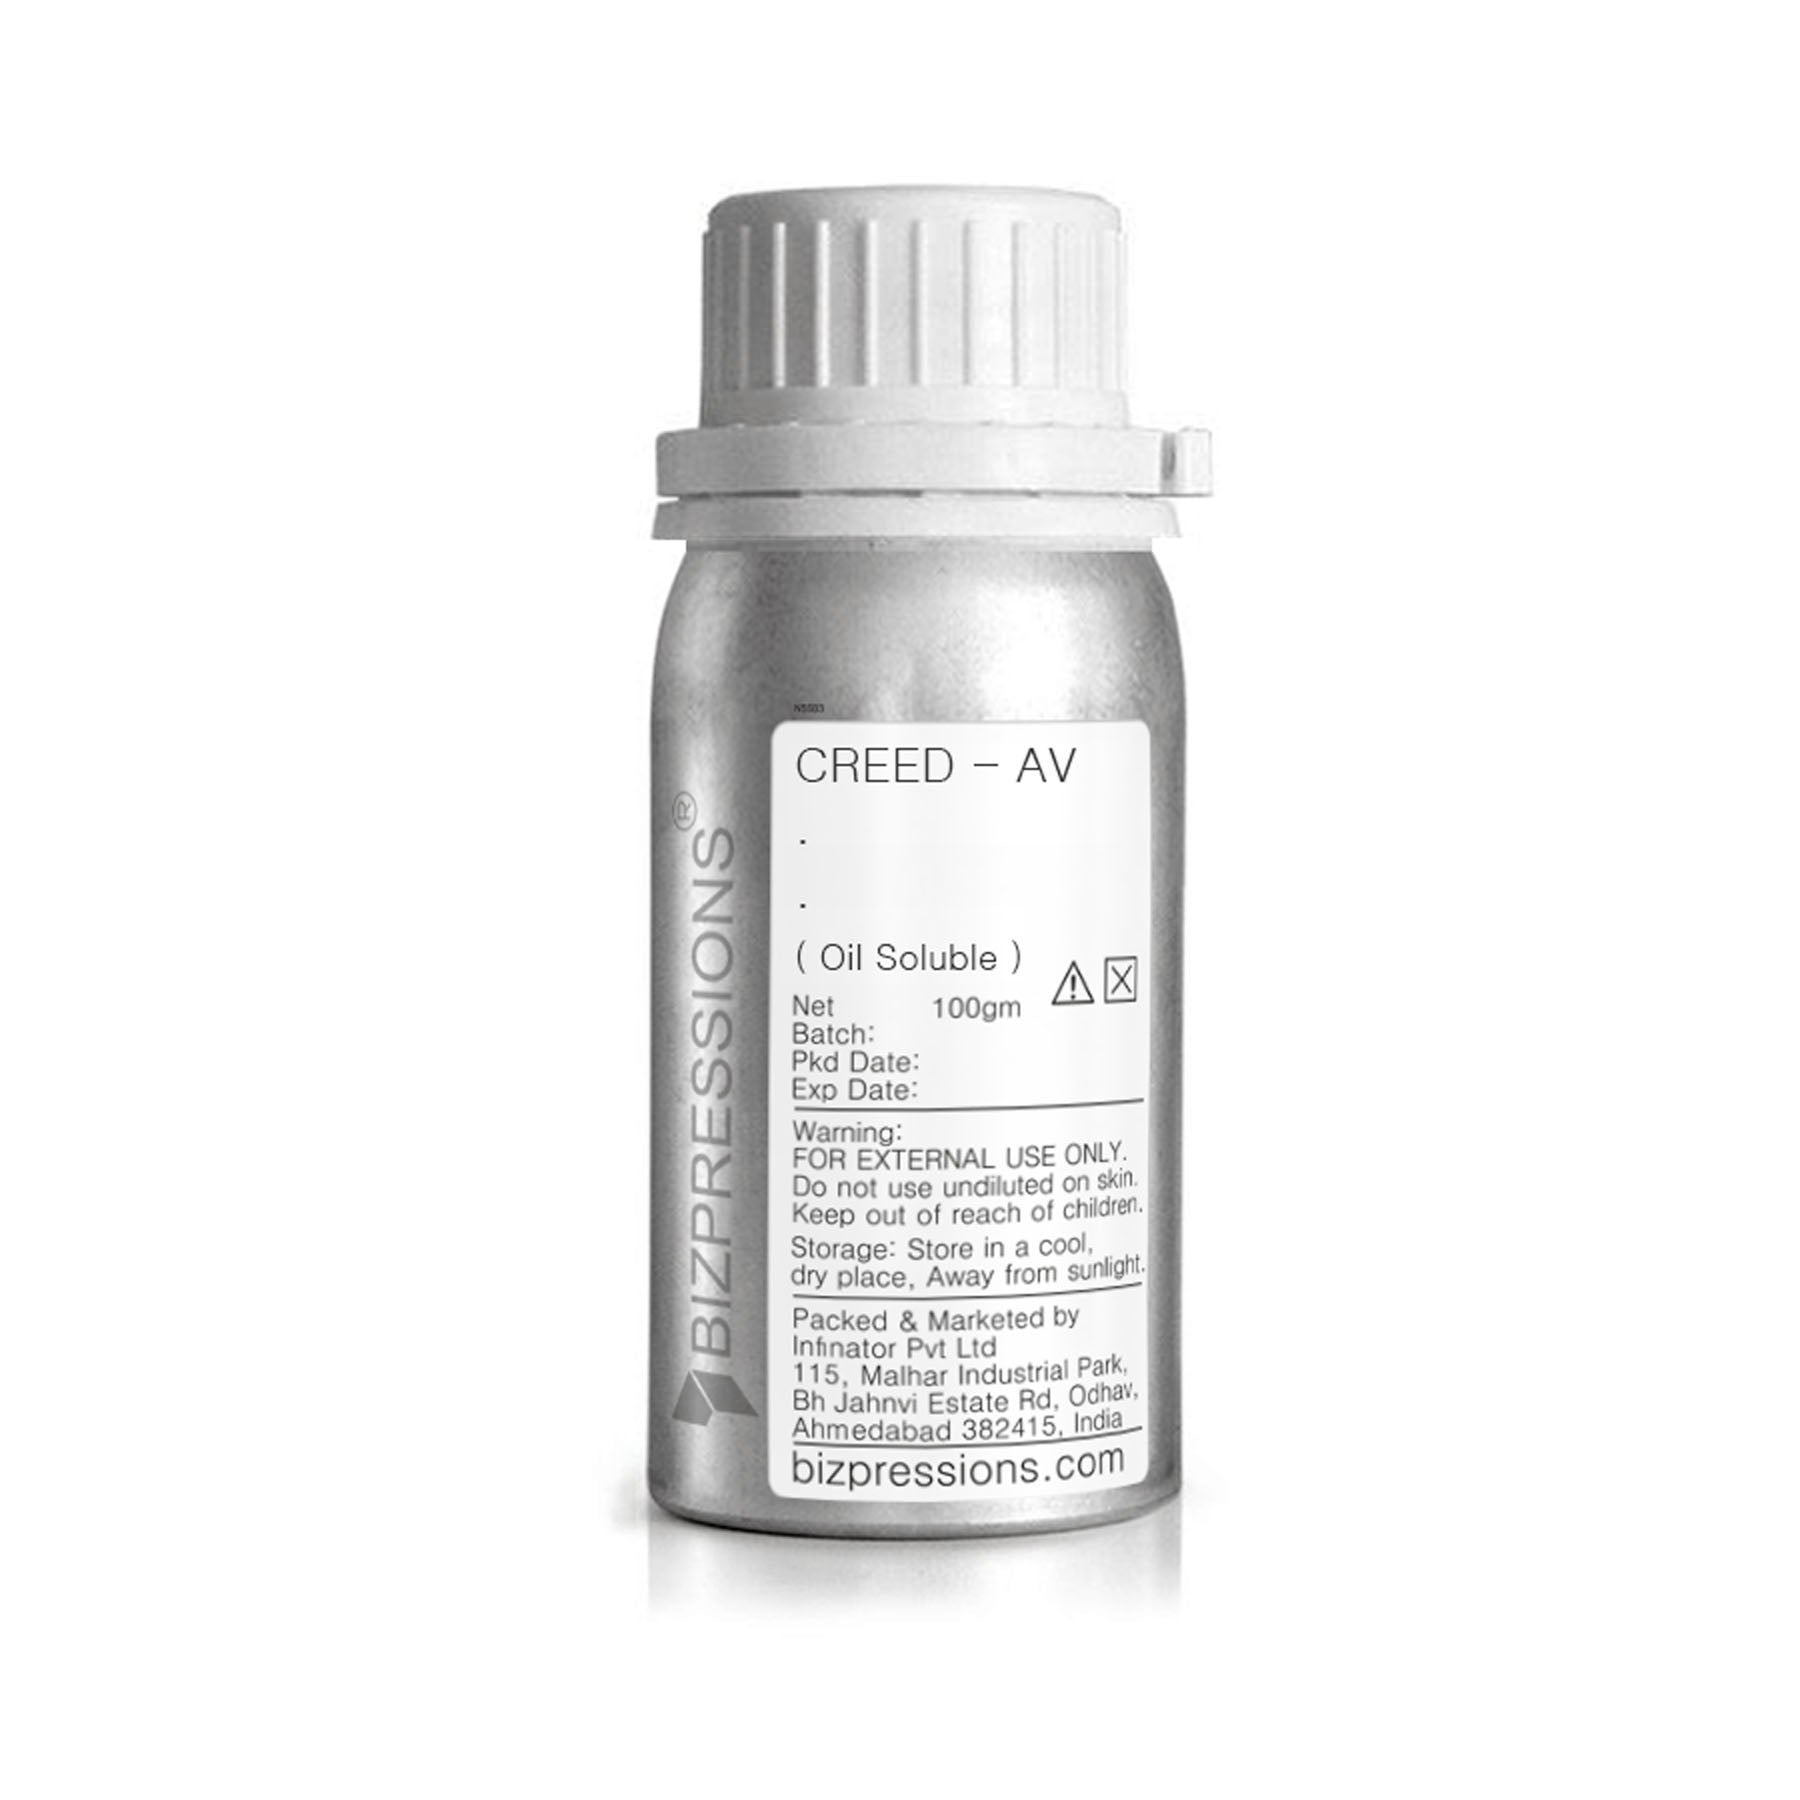 CREED - AV - Fragrance ( Oil Soluble ) - 100 gm